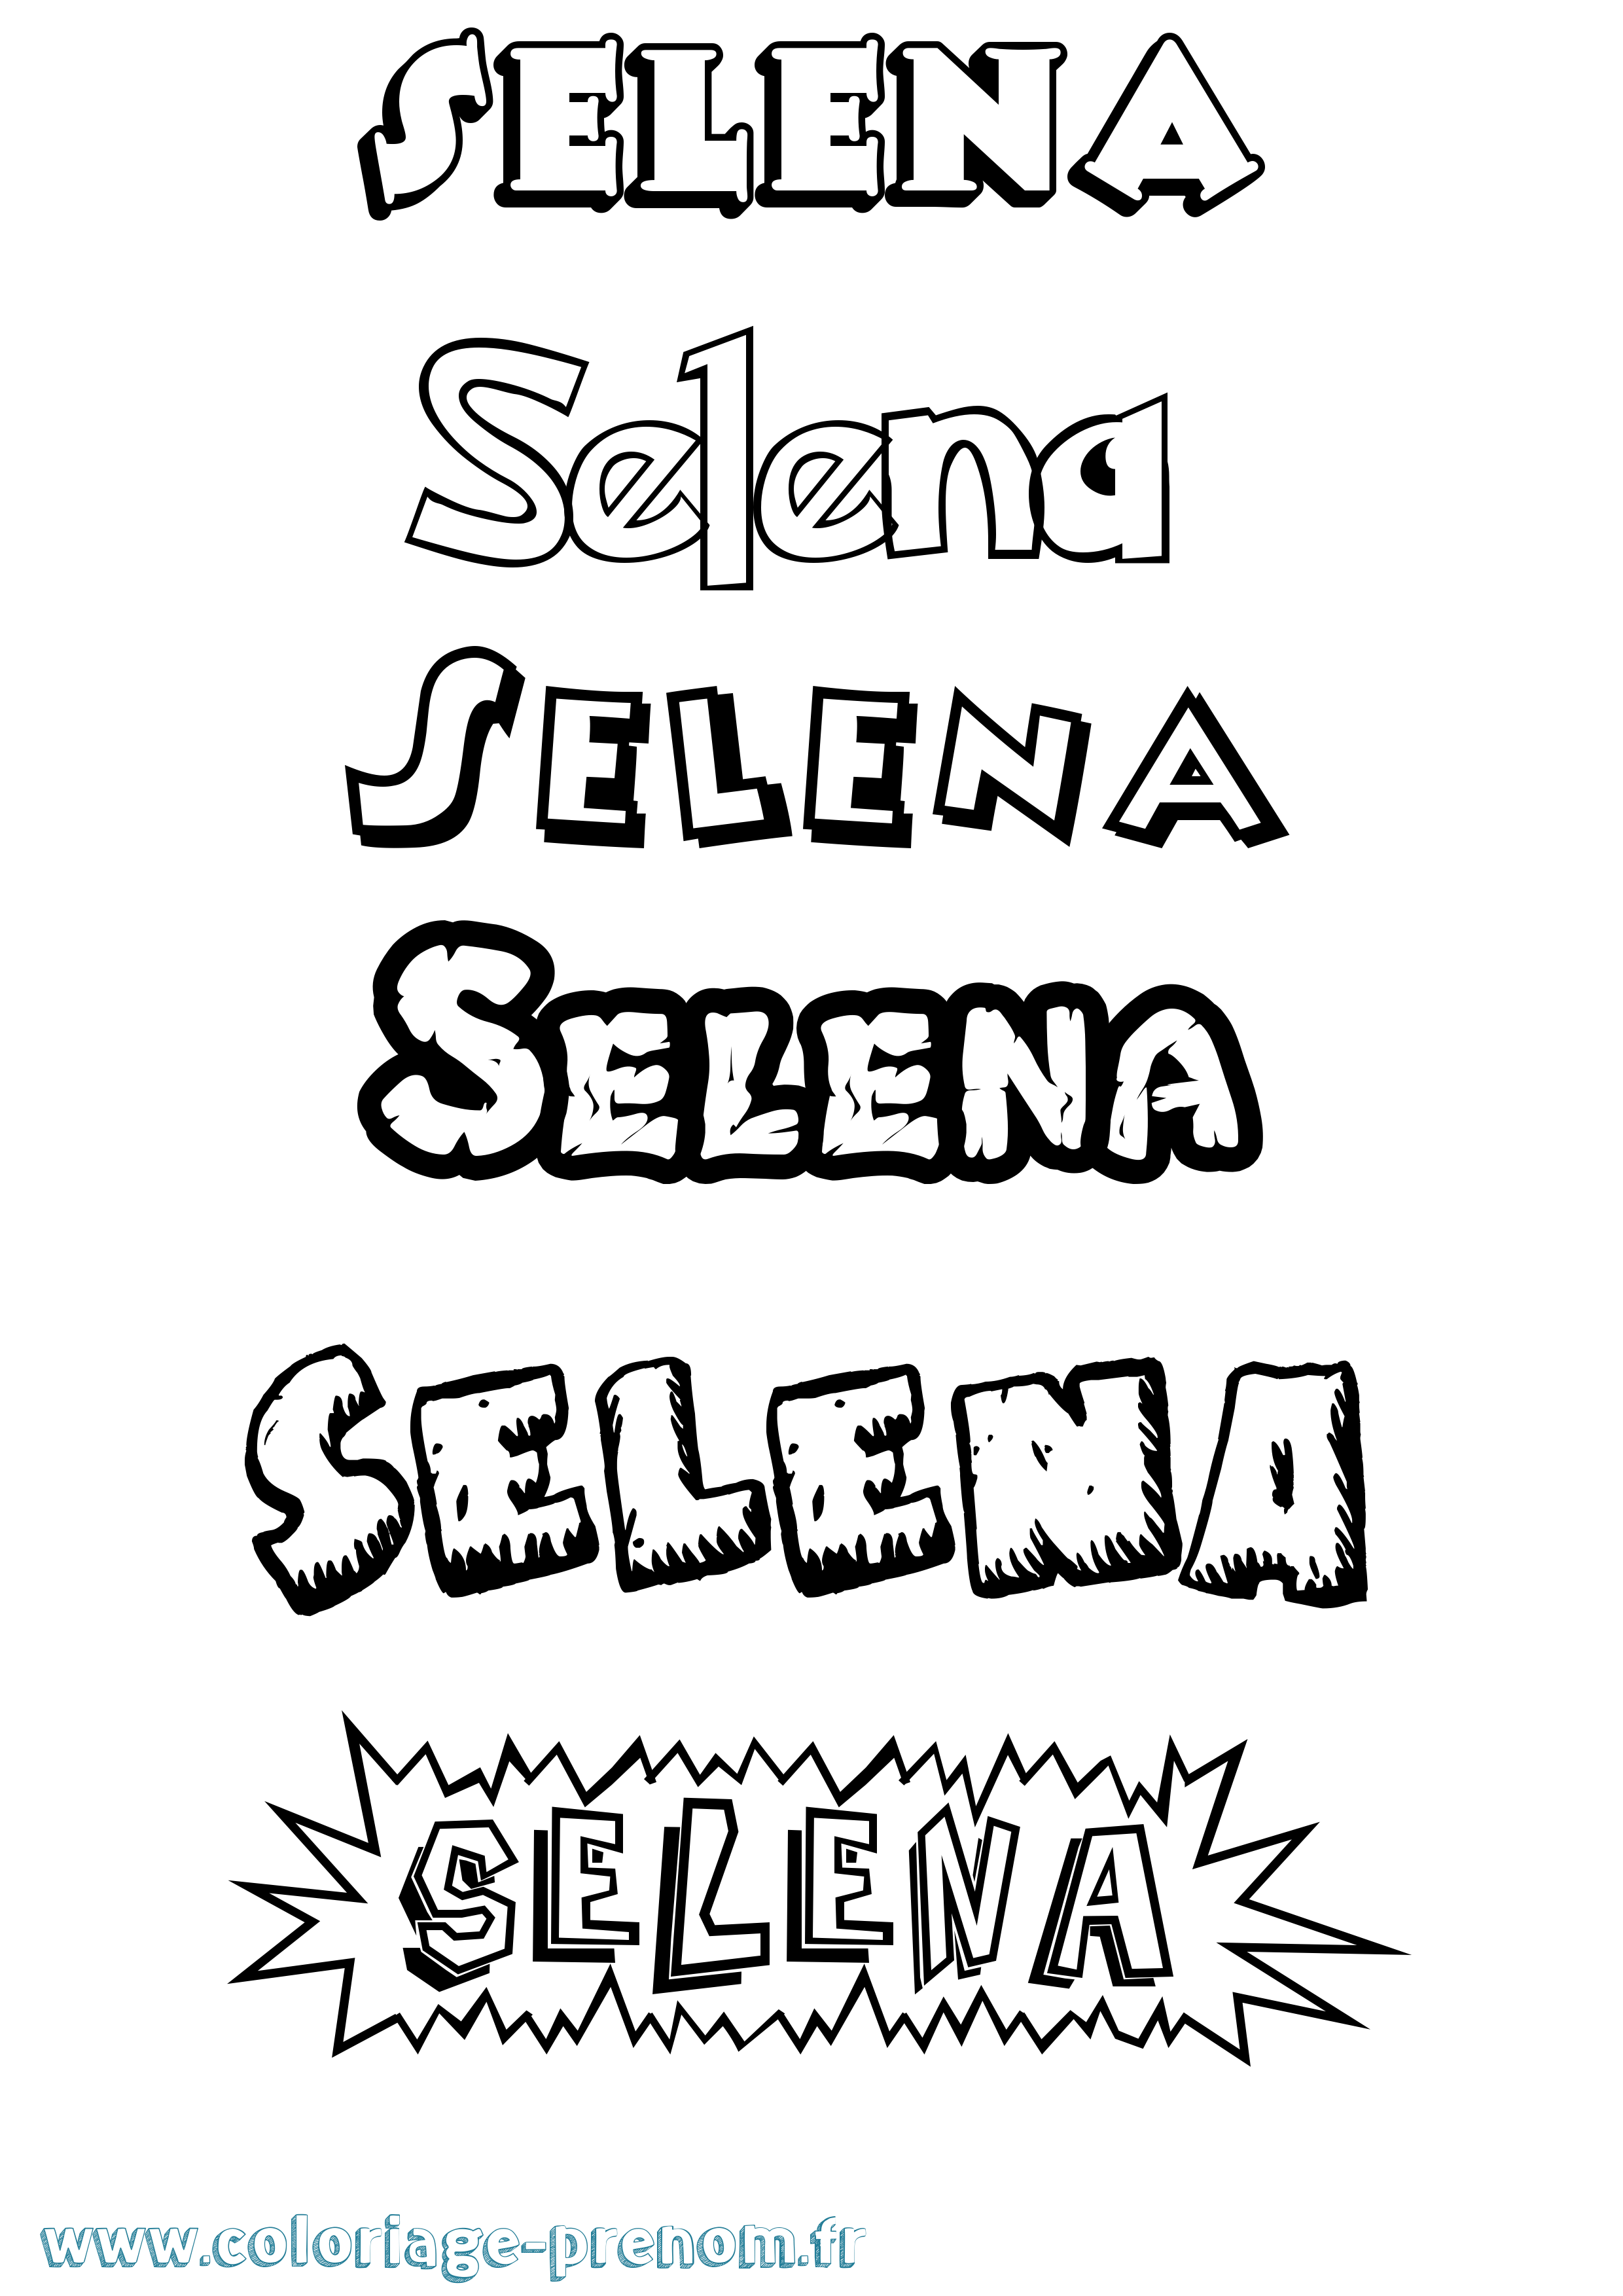 Coloriage prénom Selena